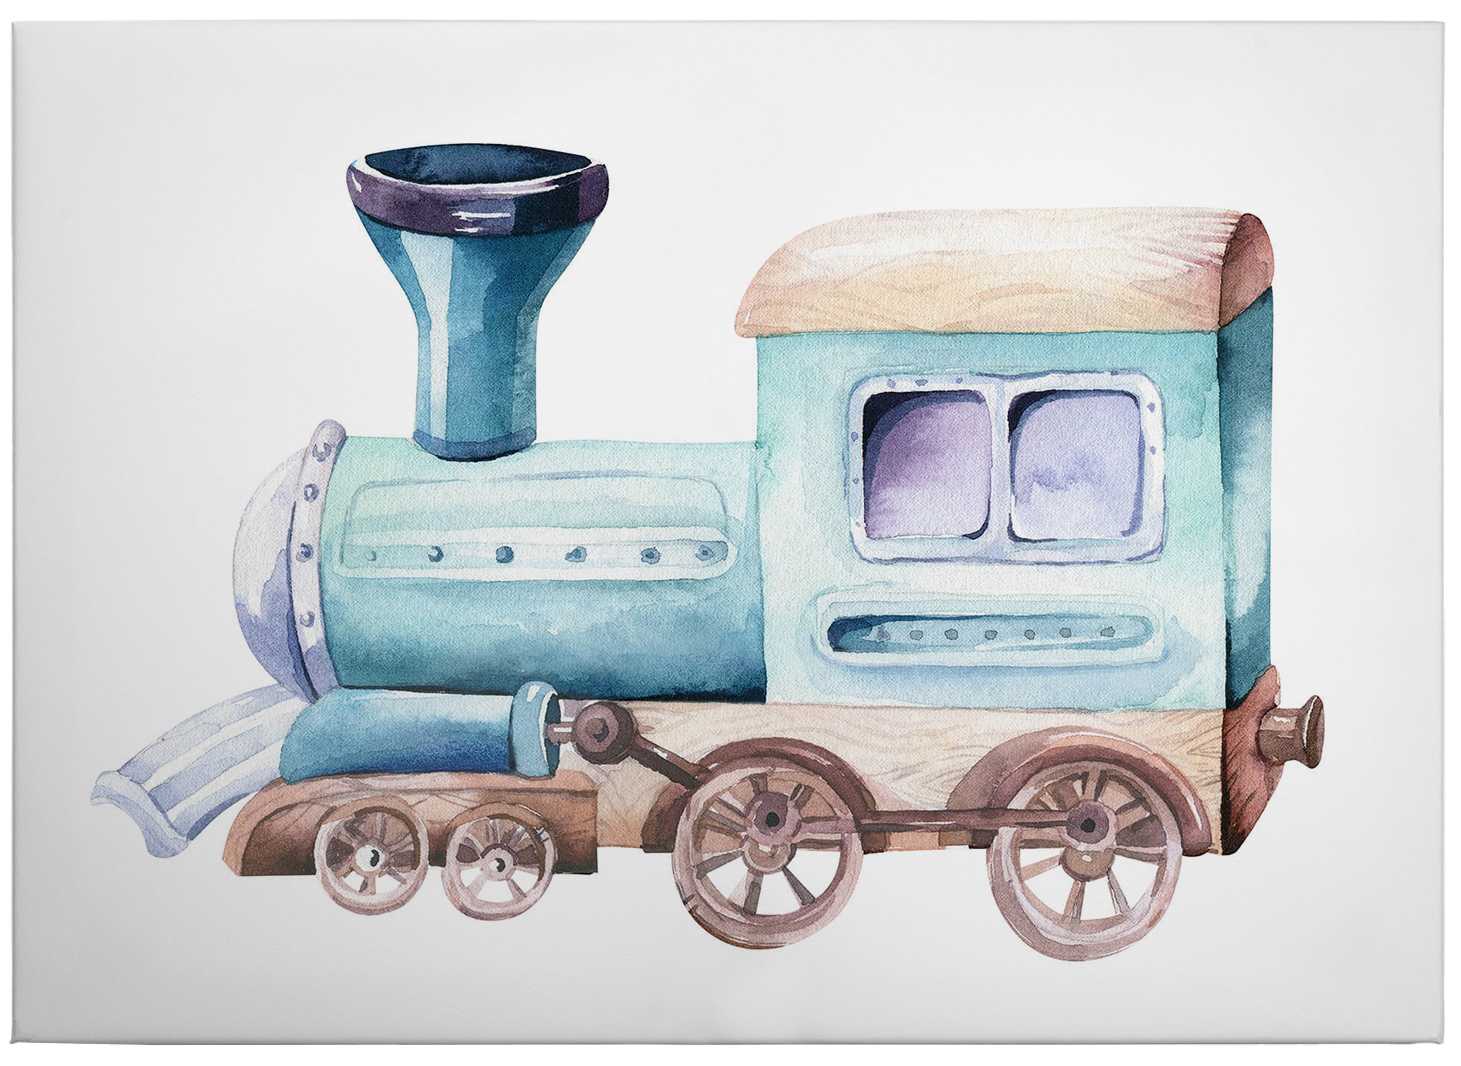             Tableau locomotive aquarelle de Kvilis - 0,70 m x 0,50 m
        